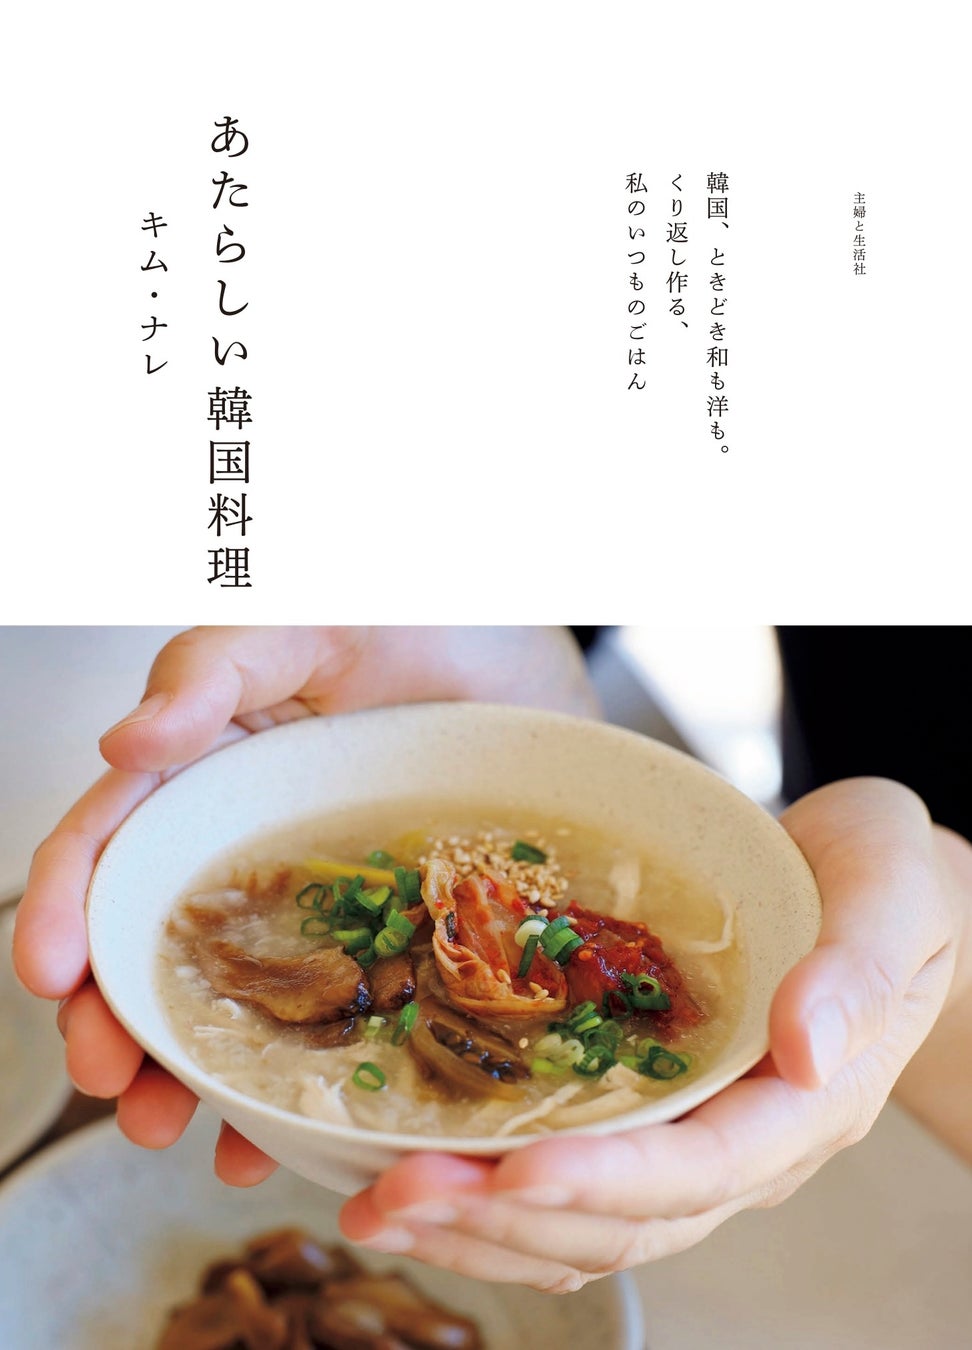 【楽天ブックス1位】辛くない、油っこくない、だから毎日食べたい！　野菜たっぷりで身体にやさしいキム・ナレ式家庭料理のレシピ集『あたらしい韓国料理』が提案する、軽やかで澄んだ味わいを食卓に。3/29発売